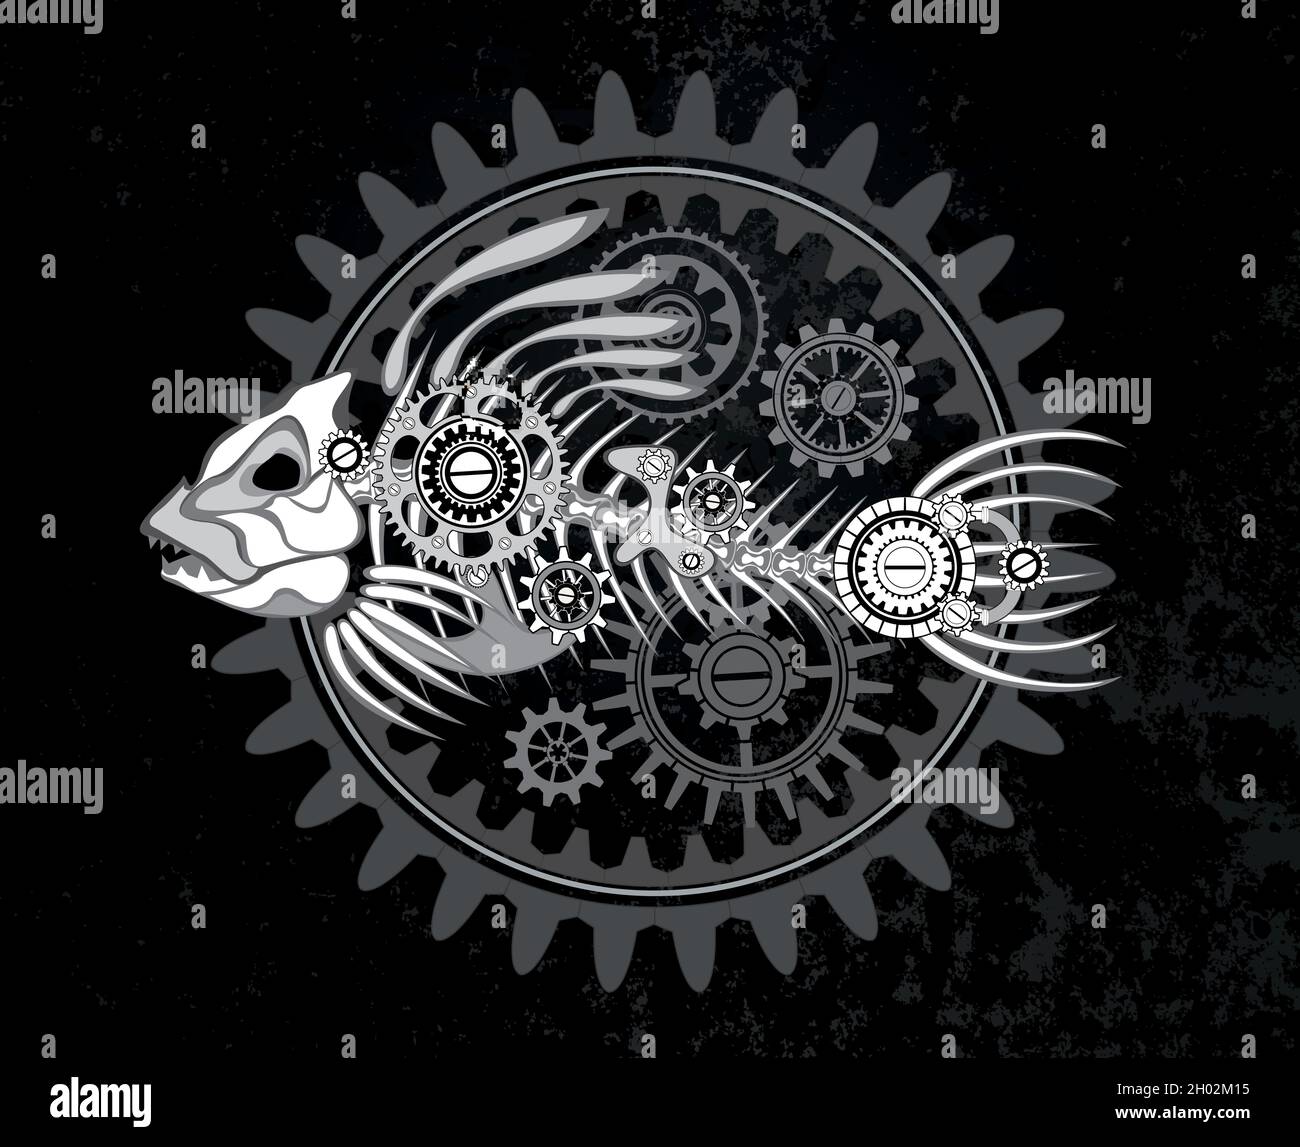 Contorno, blanco, esqueleto mecánico de peces con mecanismo de engranajes de silueta sobre fondo grunge oscuro. Estilo Steampunk. Ilustración del Vector